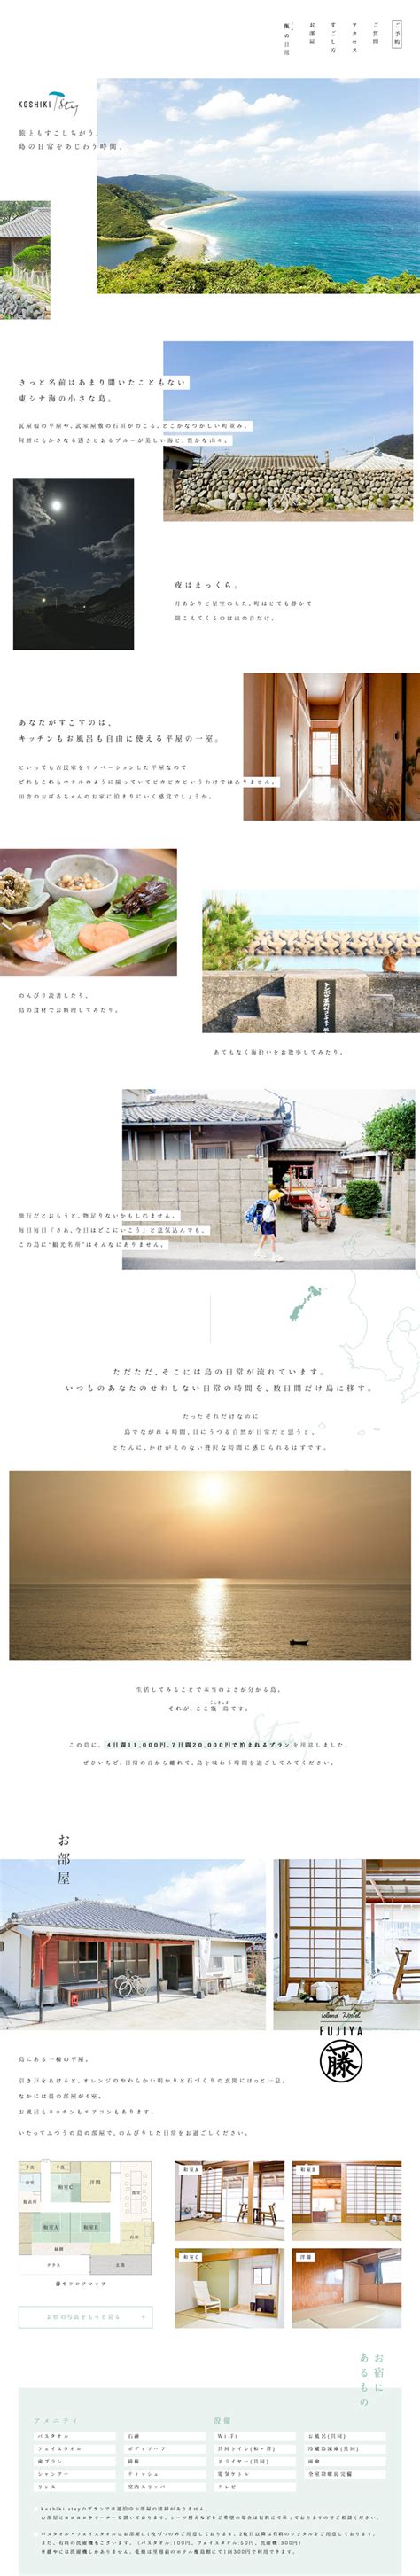 日本旅游网页设计_日本优秀旅游网页设计_日本旅游优秀网页设计欣赏-海淘科技